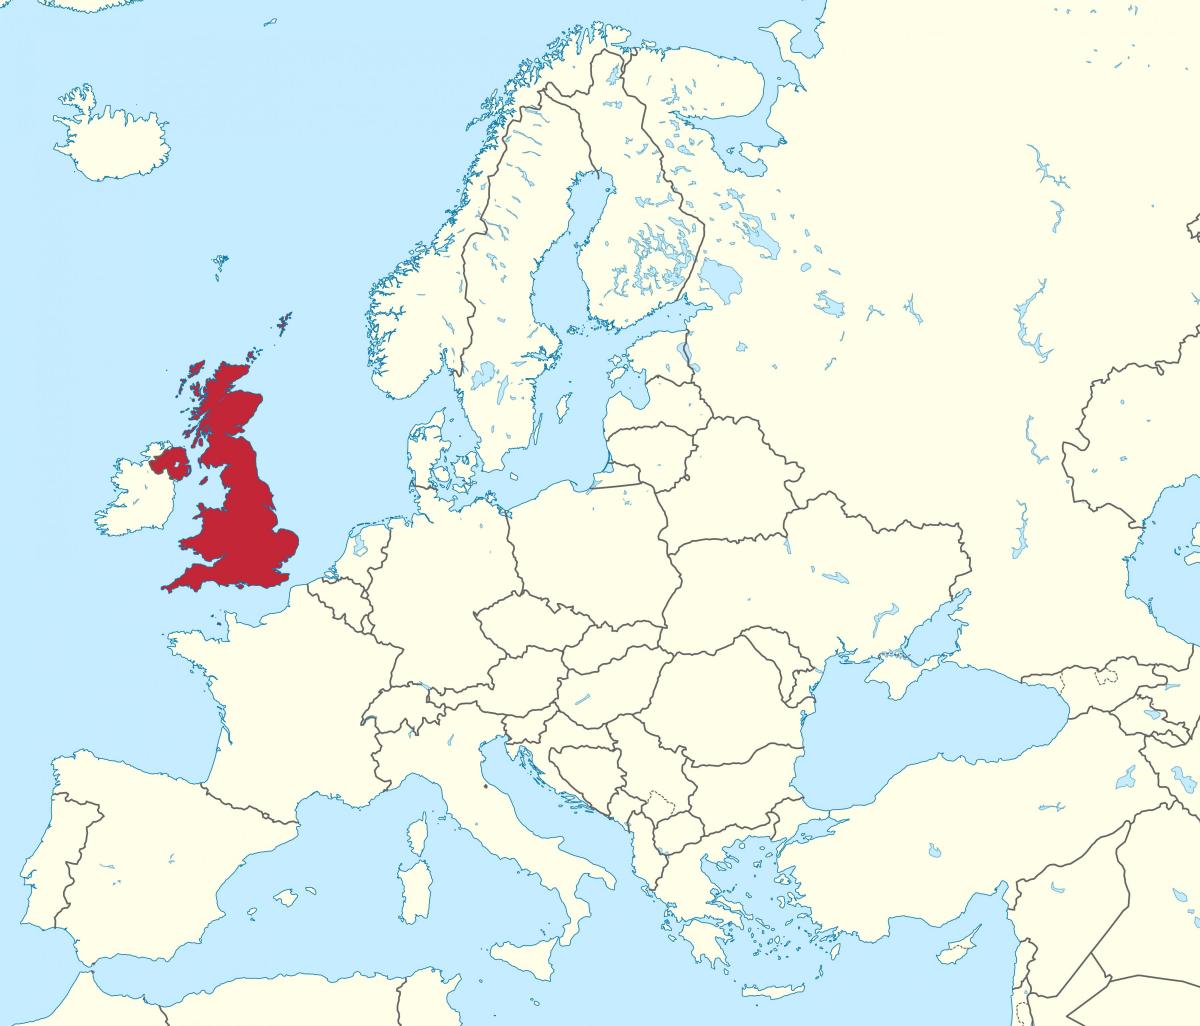 Localização do Reino Unido (UK) no mapa da Europa